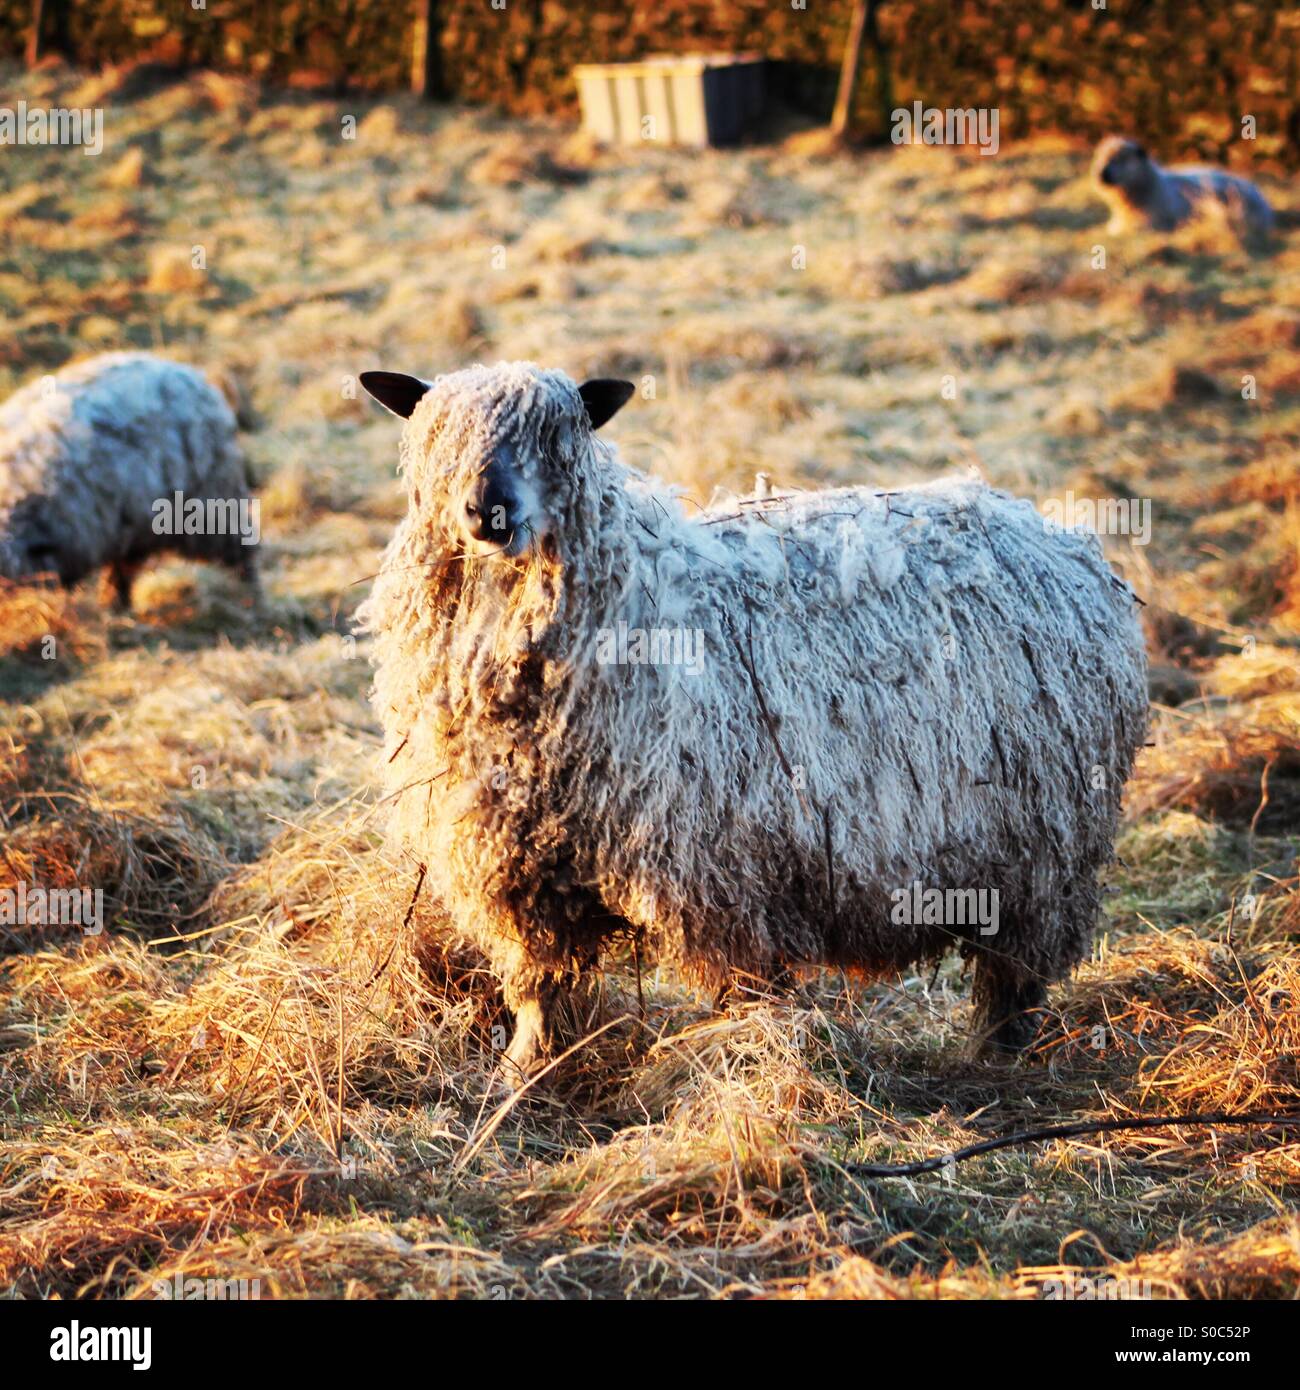 Shaggy sheep Stock Photo